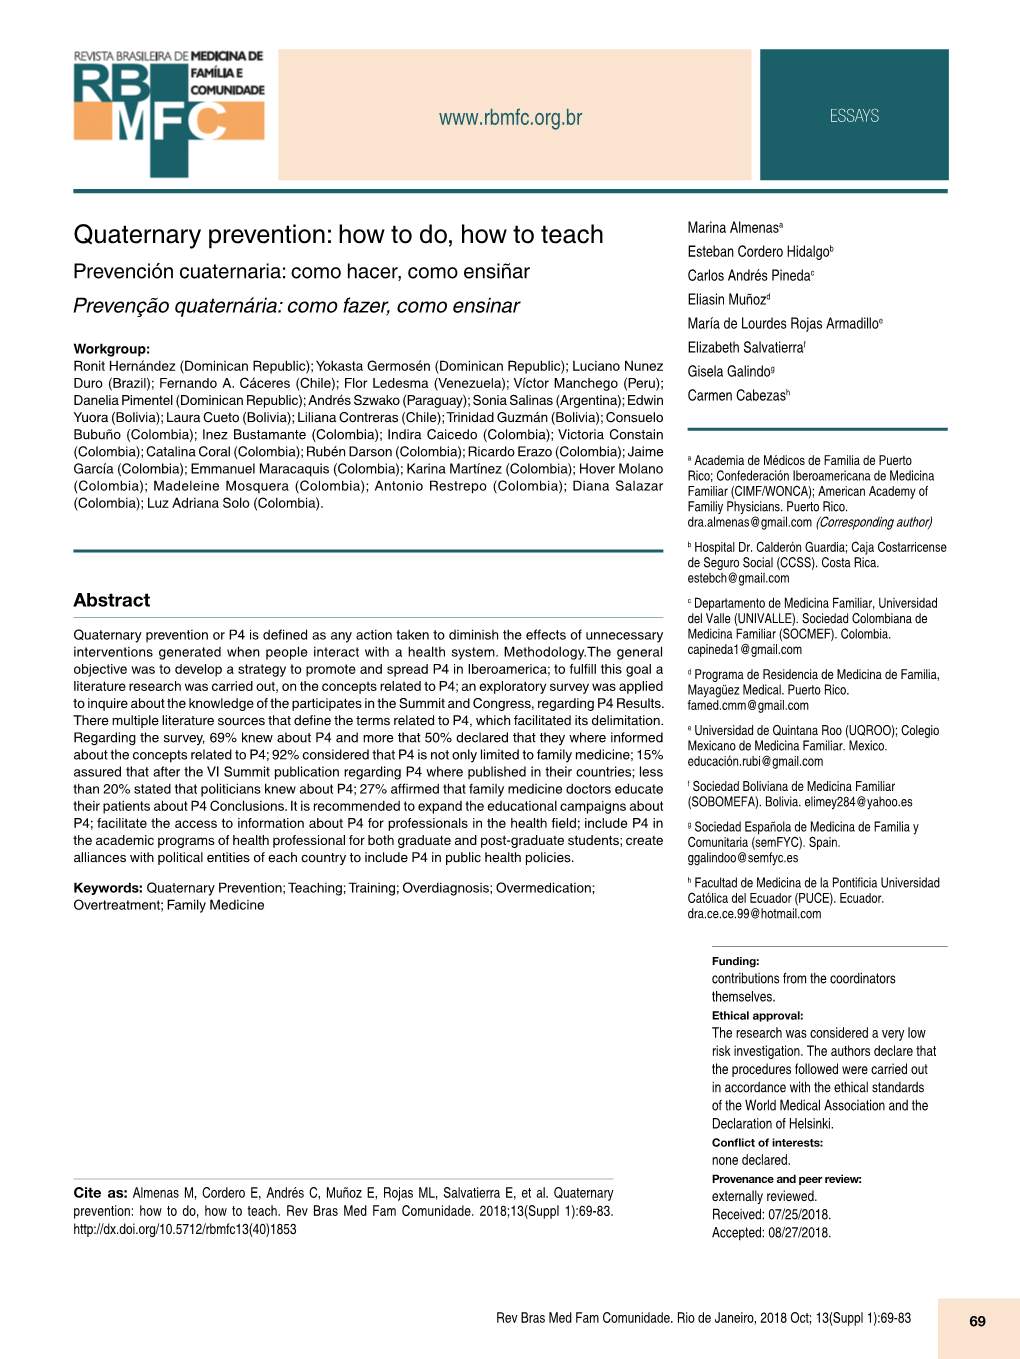 Quaternary Prevention: How to Do, How to Teach